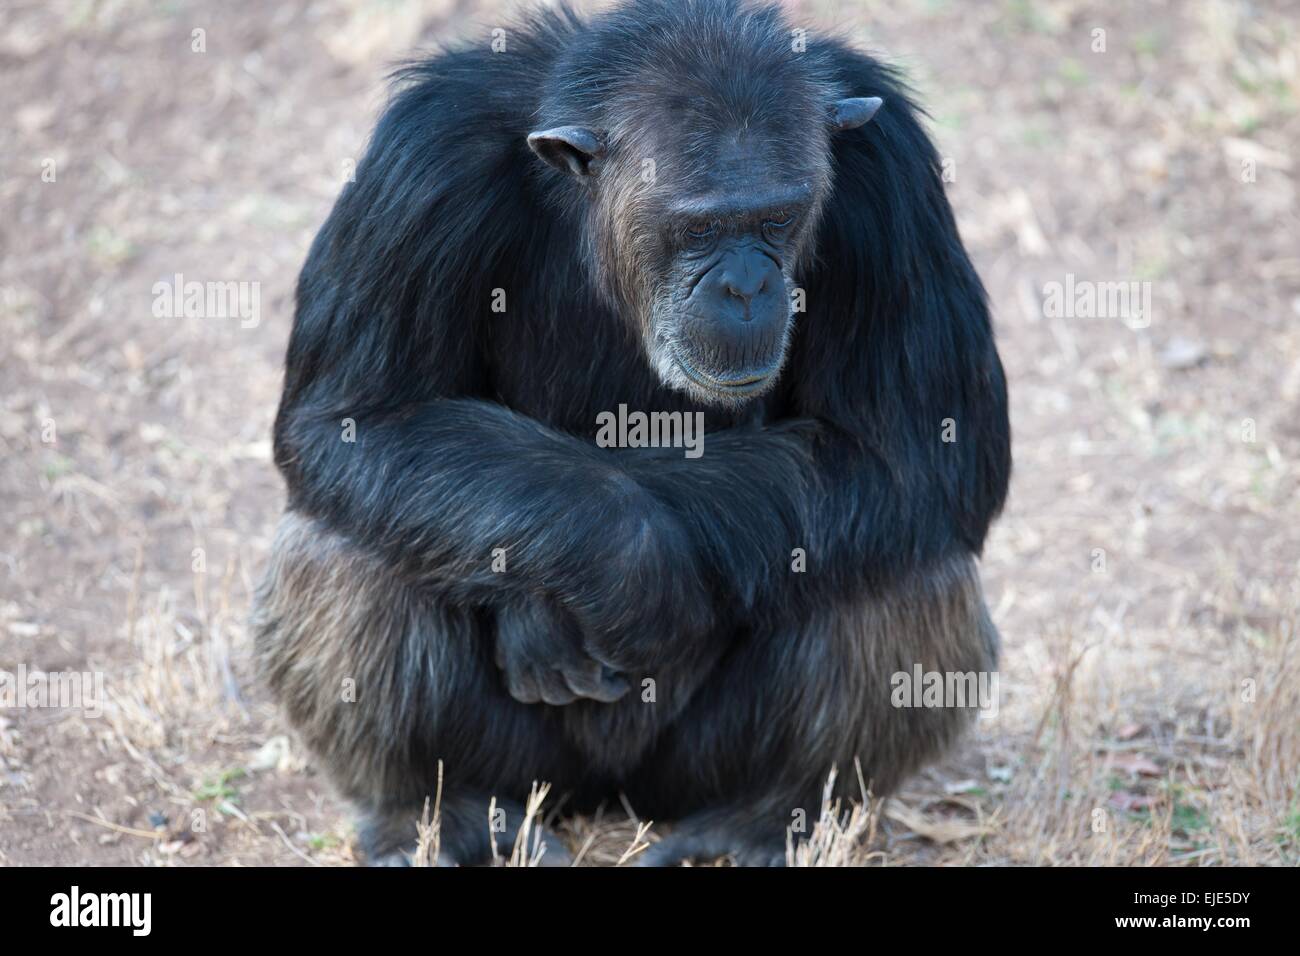 Uno scimpanzé nel parco nazionale dell'Africa Foto Stock